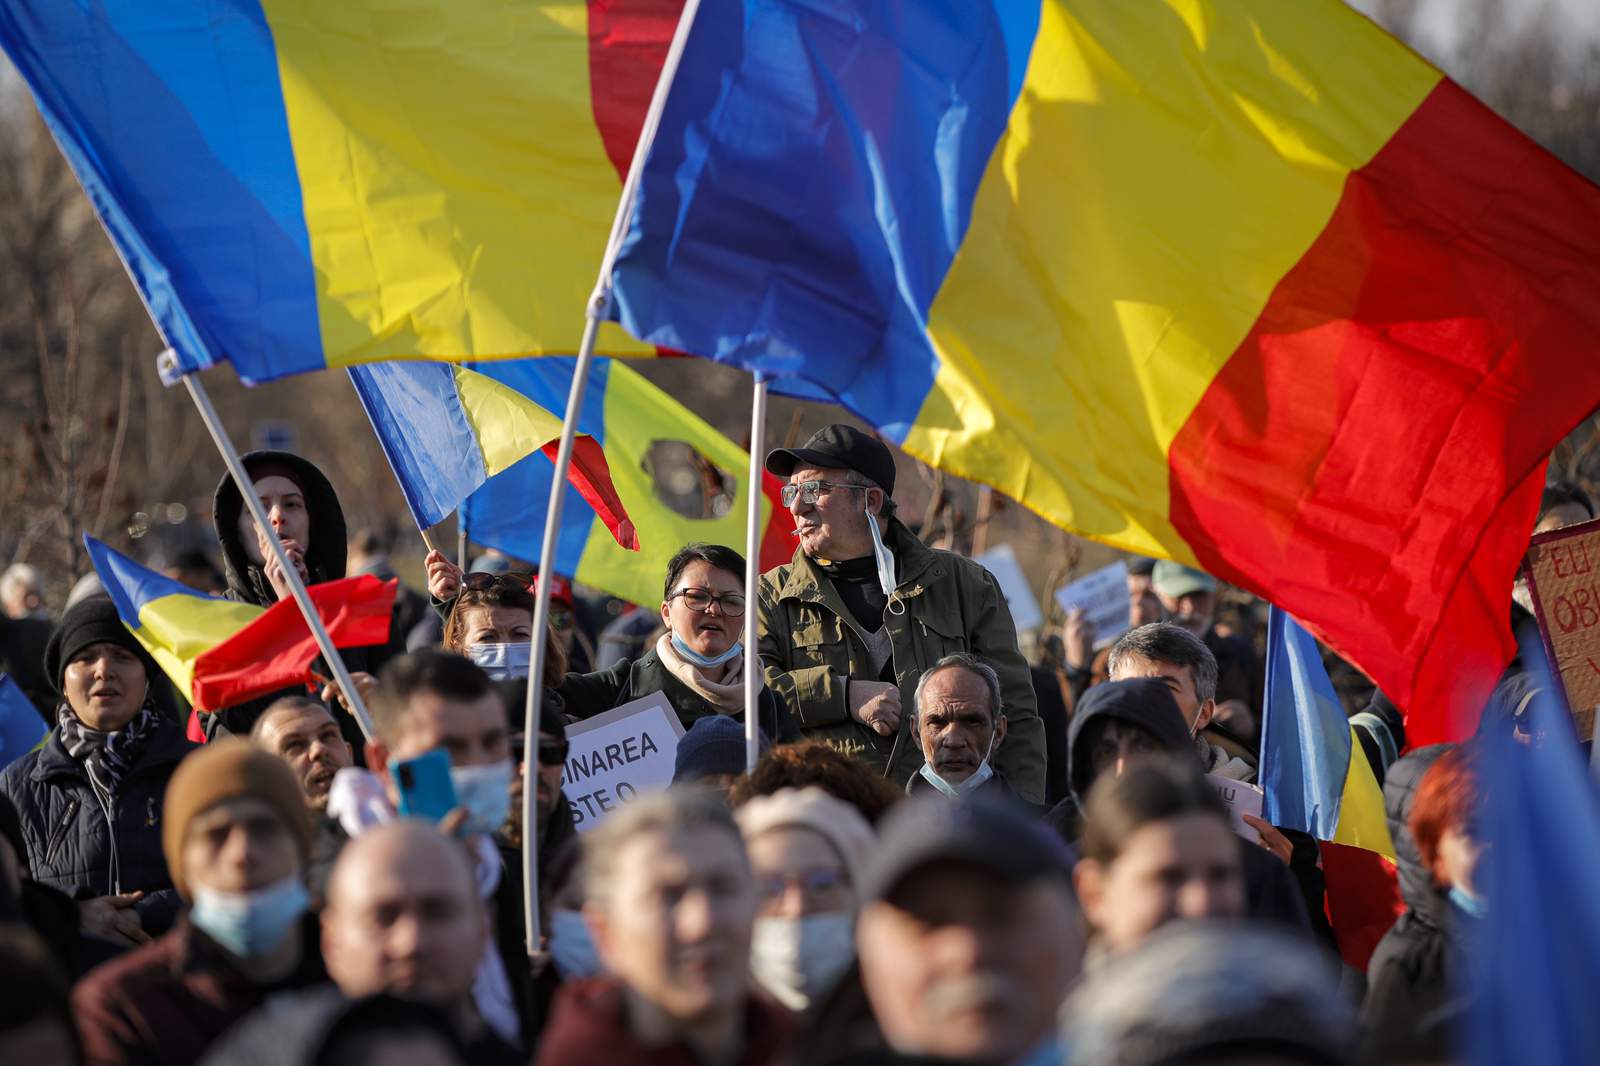 3,000 at Romania anti-vaccination protest amid COVID-19 rise